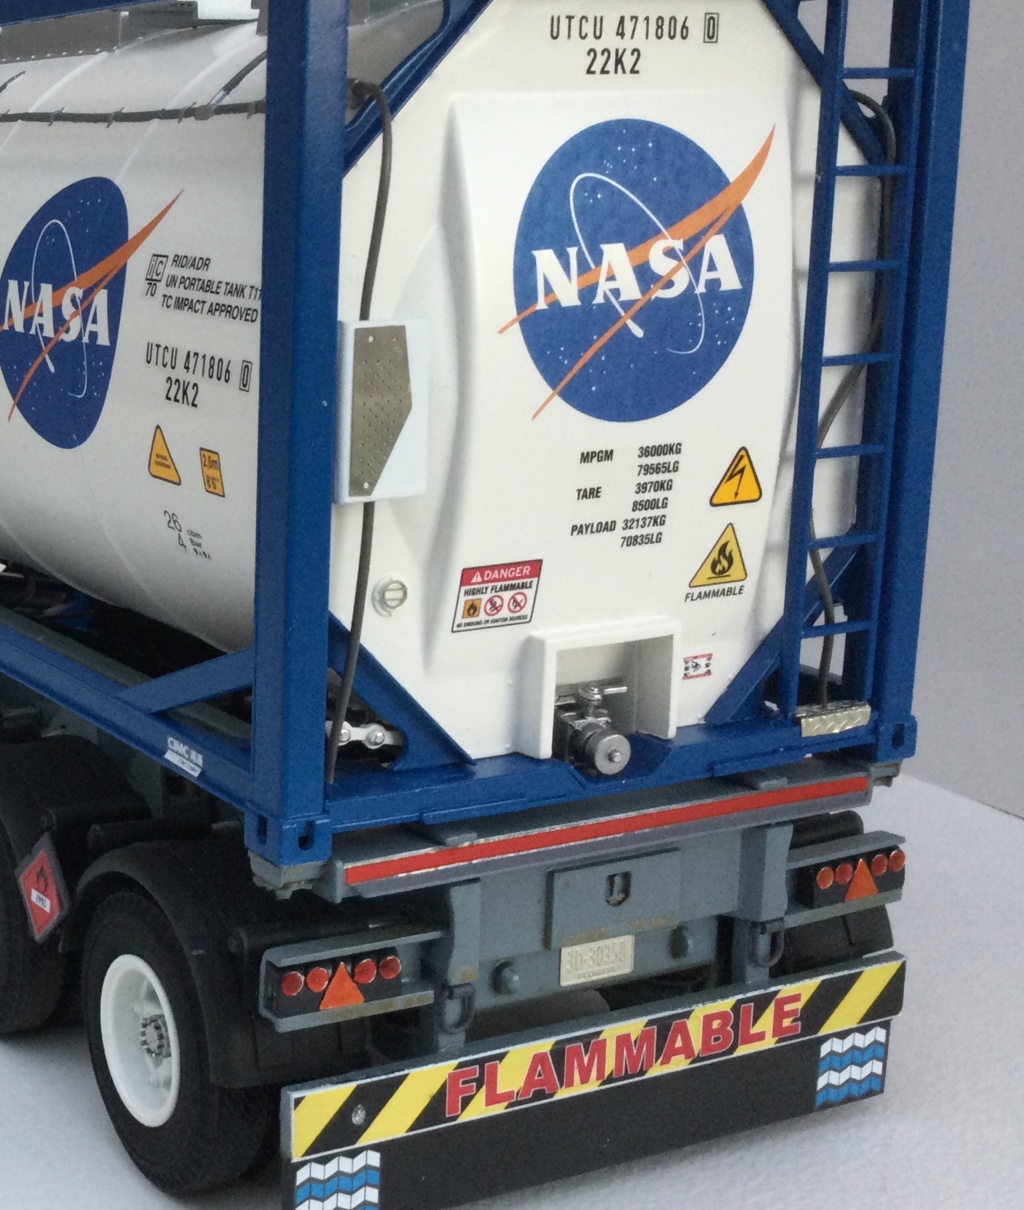 Le NASA truck 47a94e10